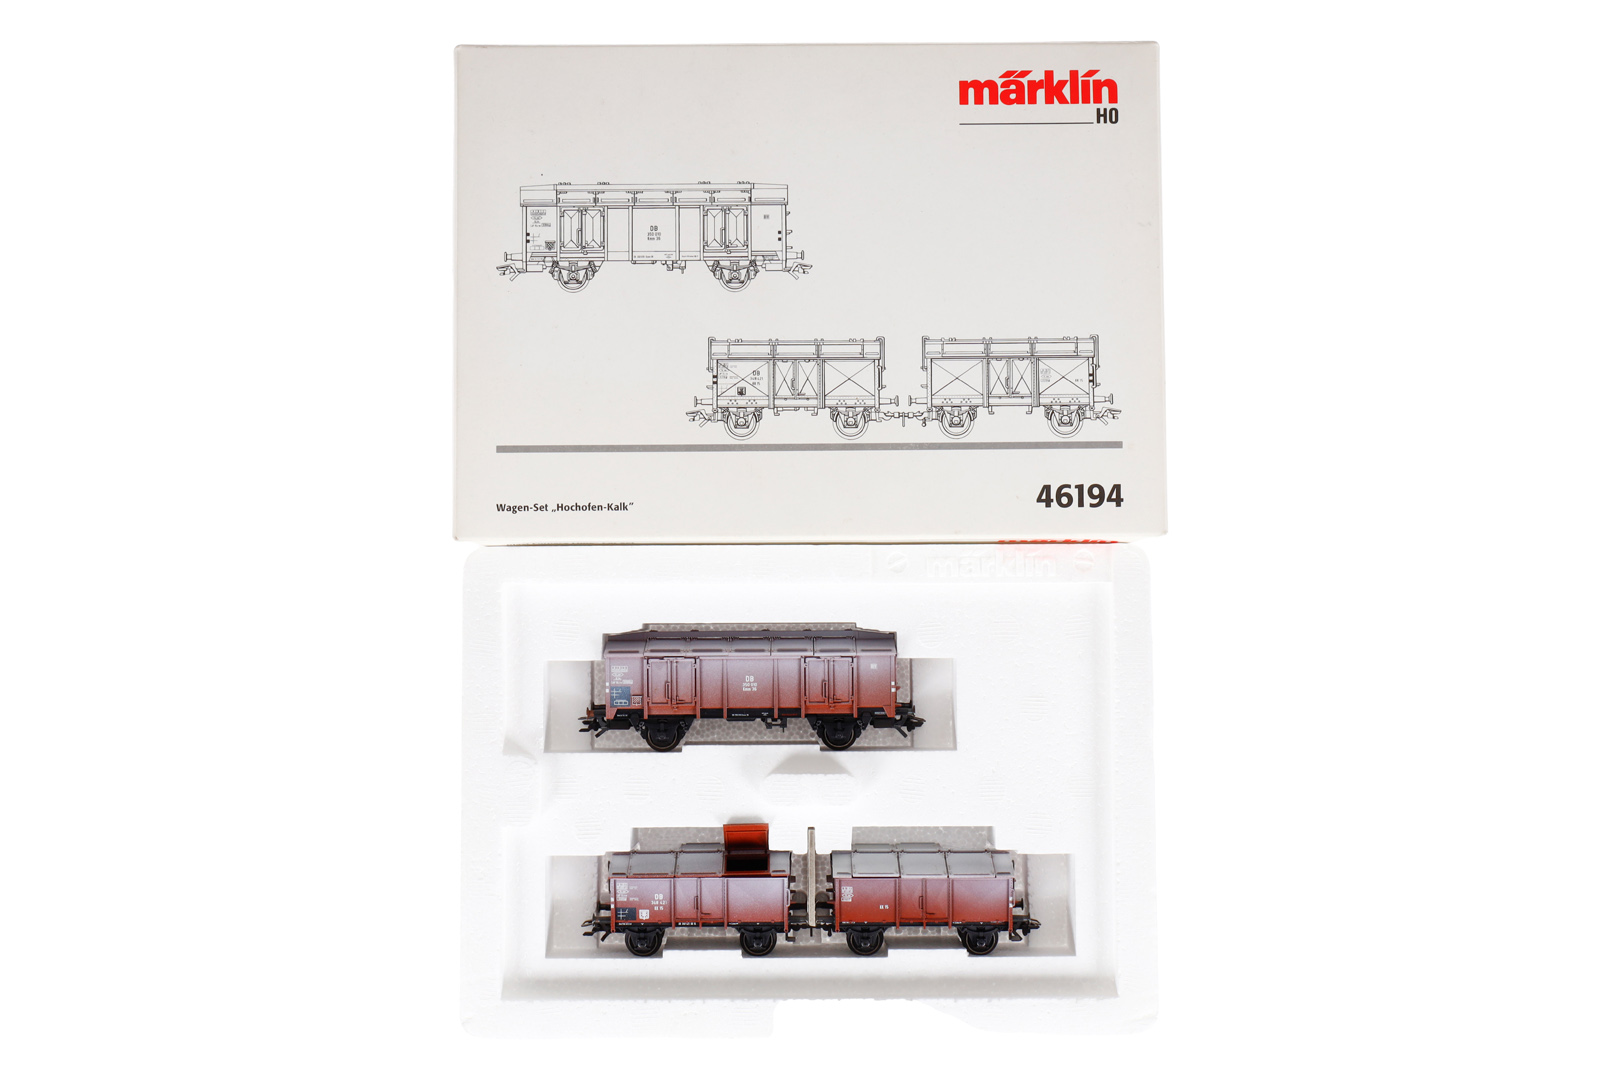 Märklin Wagen-Set ”Hochofen-Kalk” 46194, Spur H0, 3-teilig, Alterungsspuren, OK, Z 2